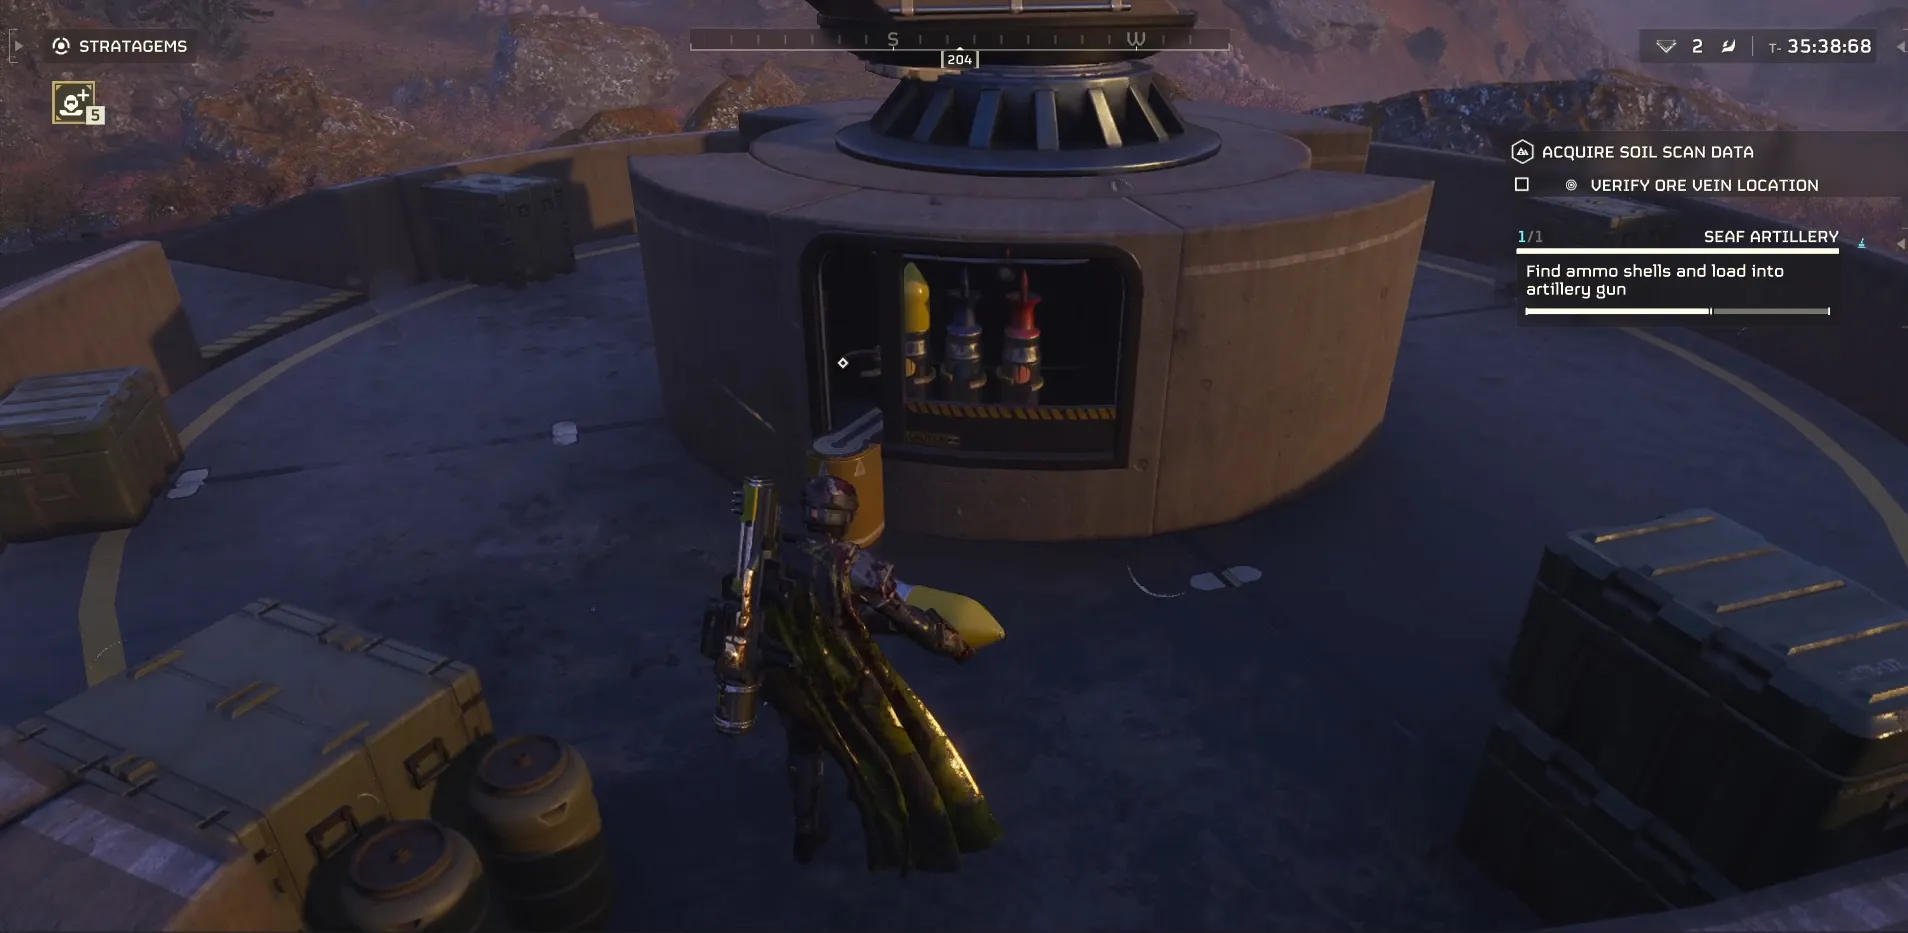 플레이어가 헬더스 2에서 SEAF 포병 장전실로 연막 포탄을 옮기는 모습. 빨간색, 파란색 및 노란색 포탄이 이미 장전되어 있습니다.